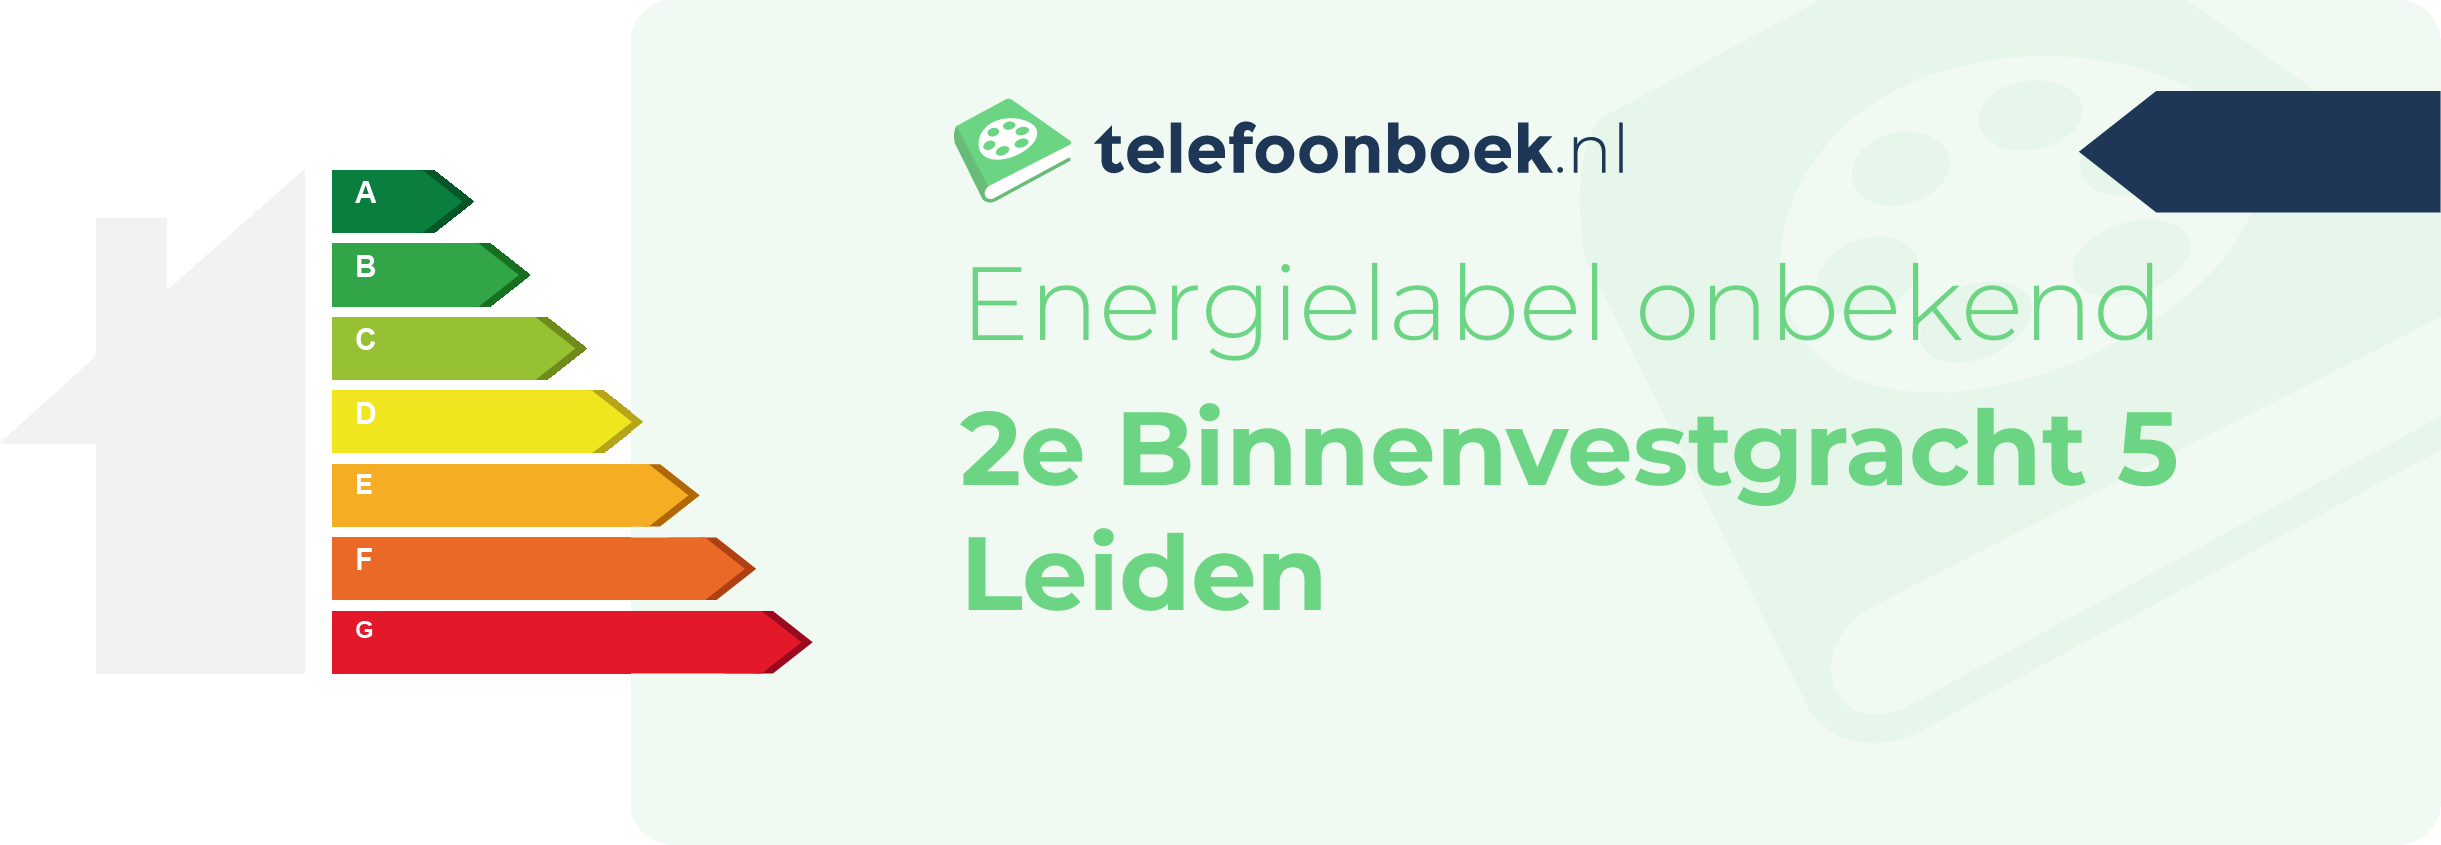 Energielabel 2e Binnenvestgracht 5 Leiden